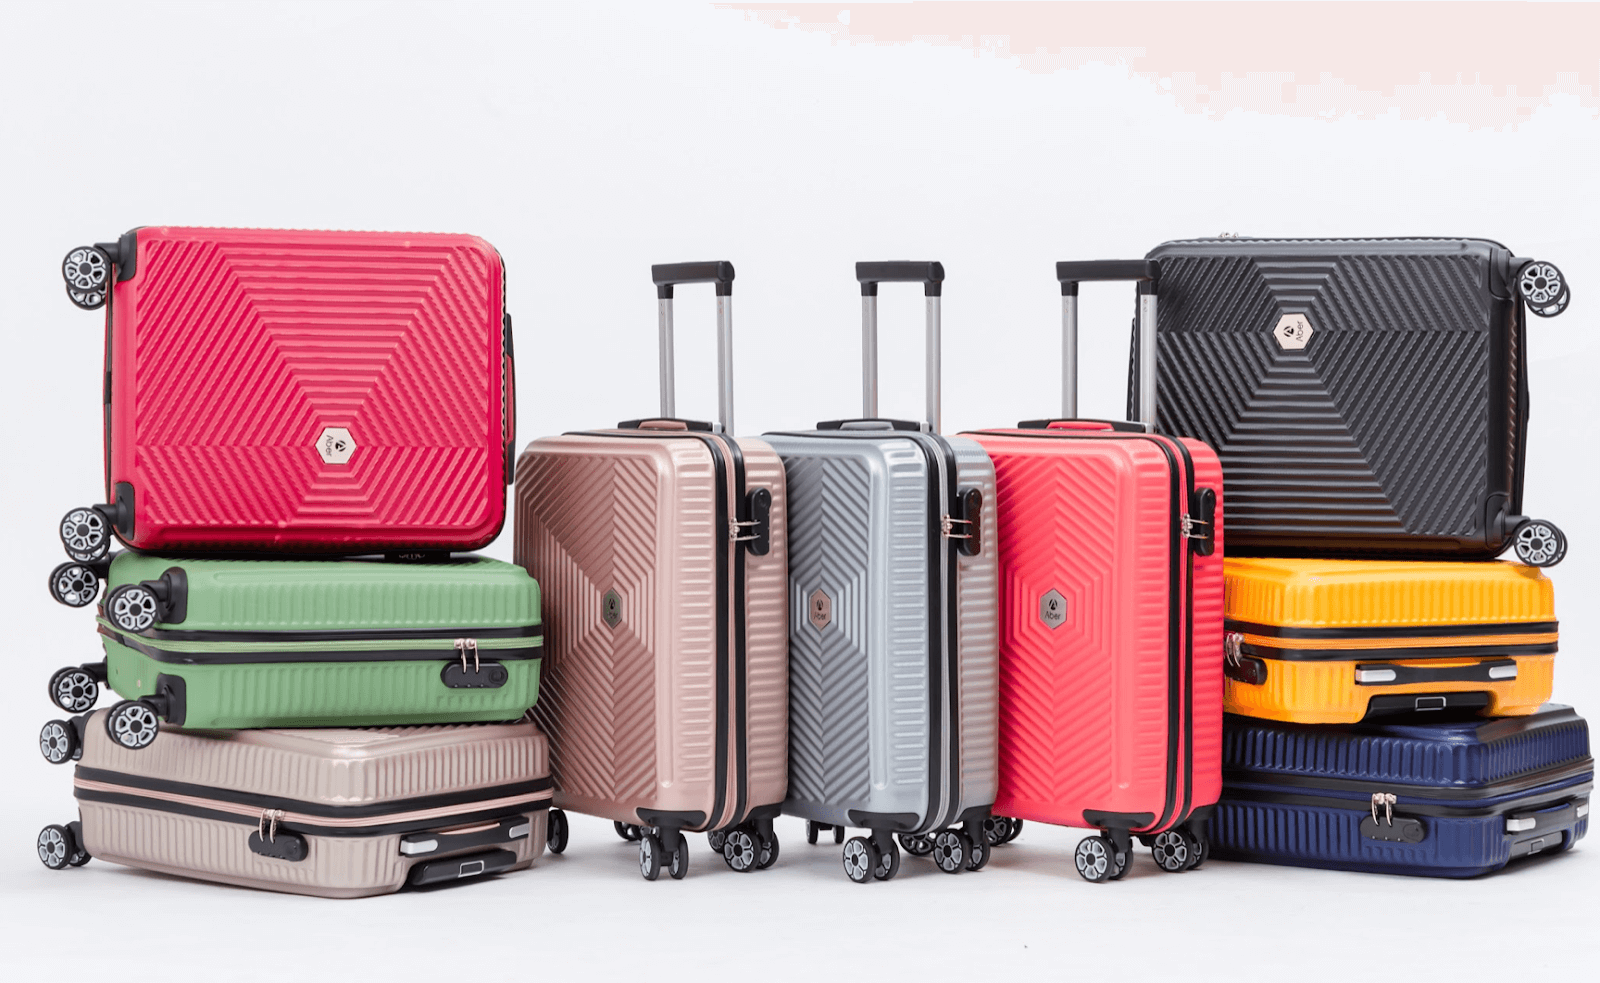 Hãy chắc chắn rằng chiếc vali của bạn có đủ chỗ cho chuyến đi dài